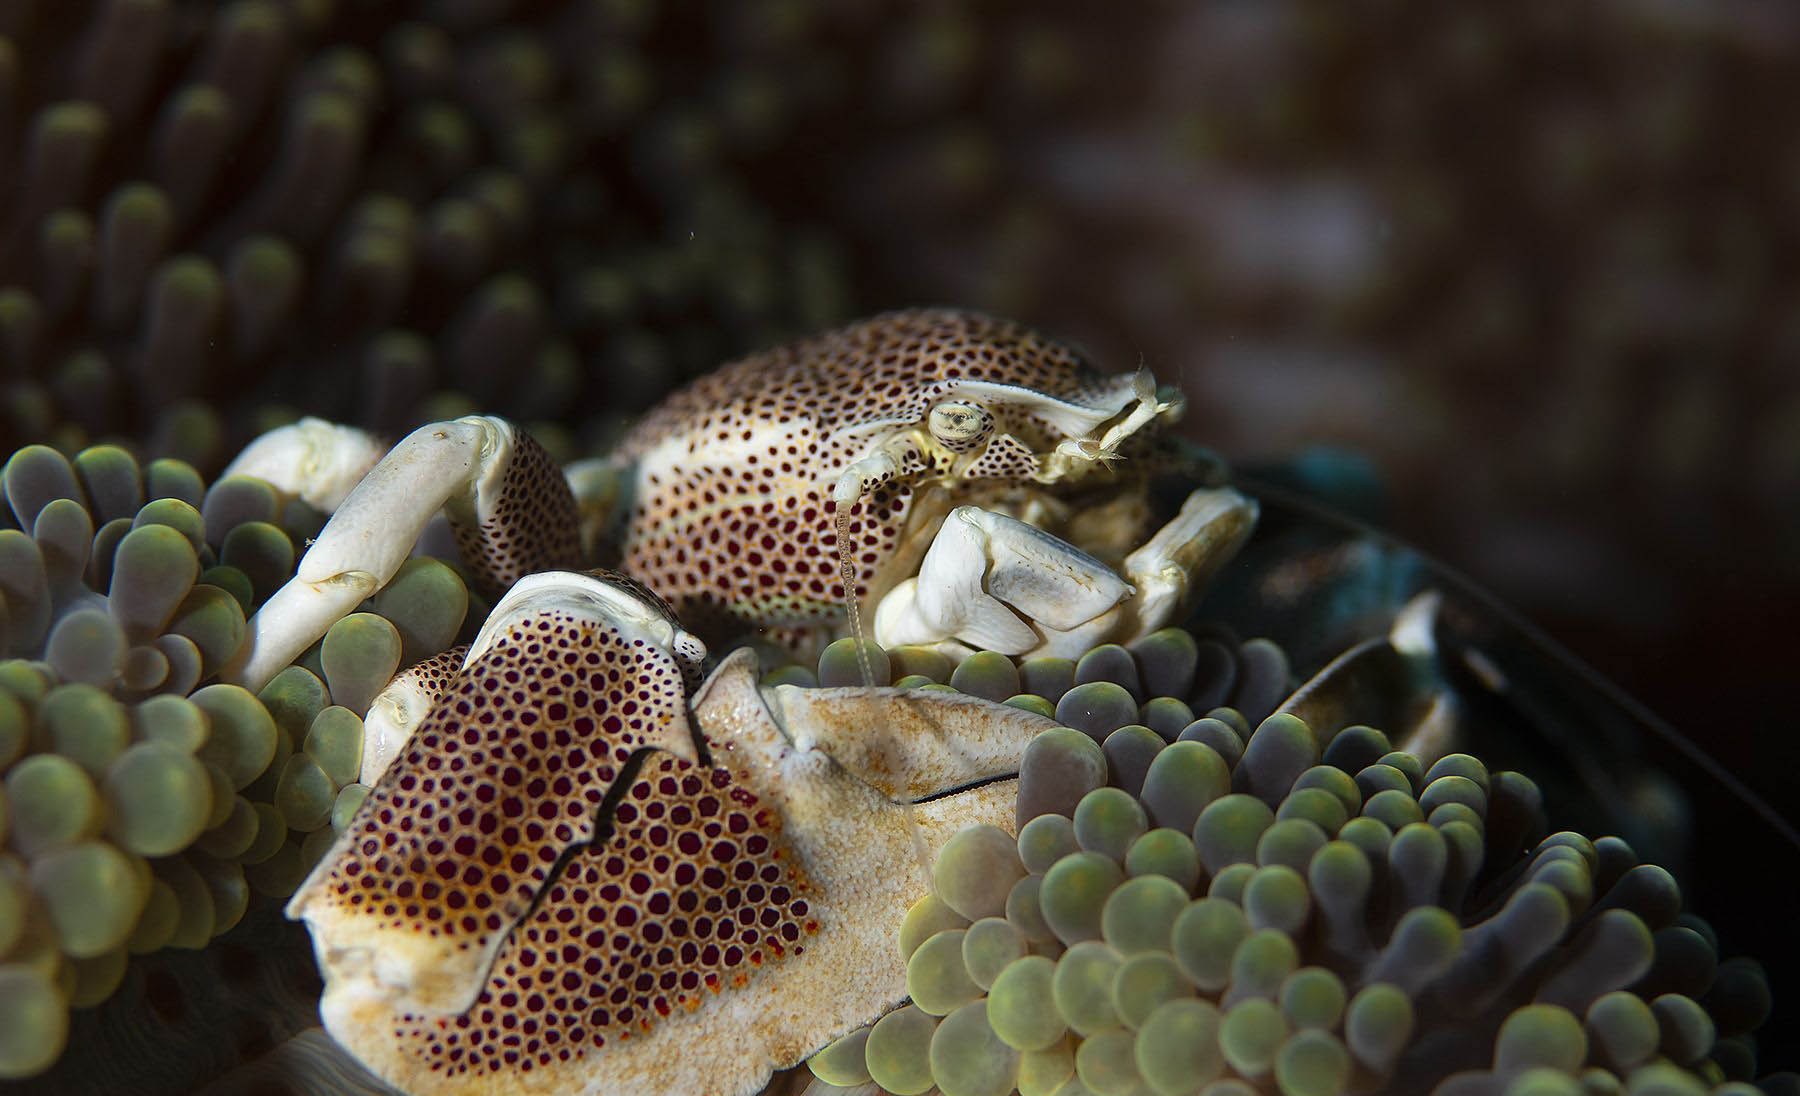 underwater species - roctopus moyo island